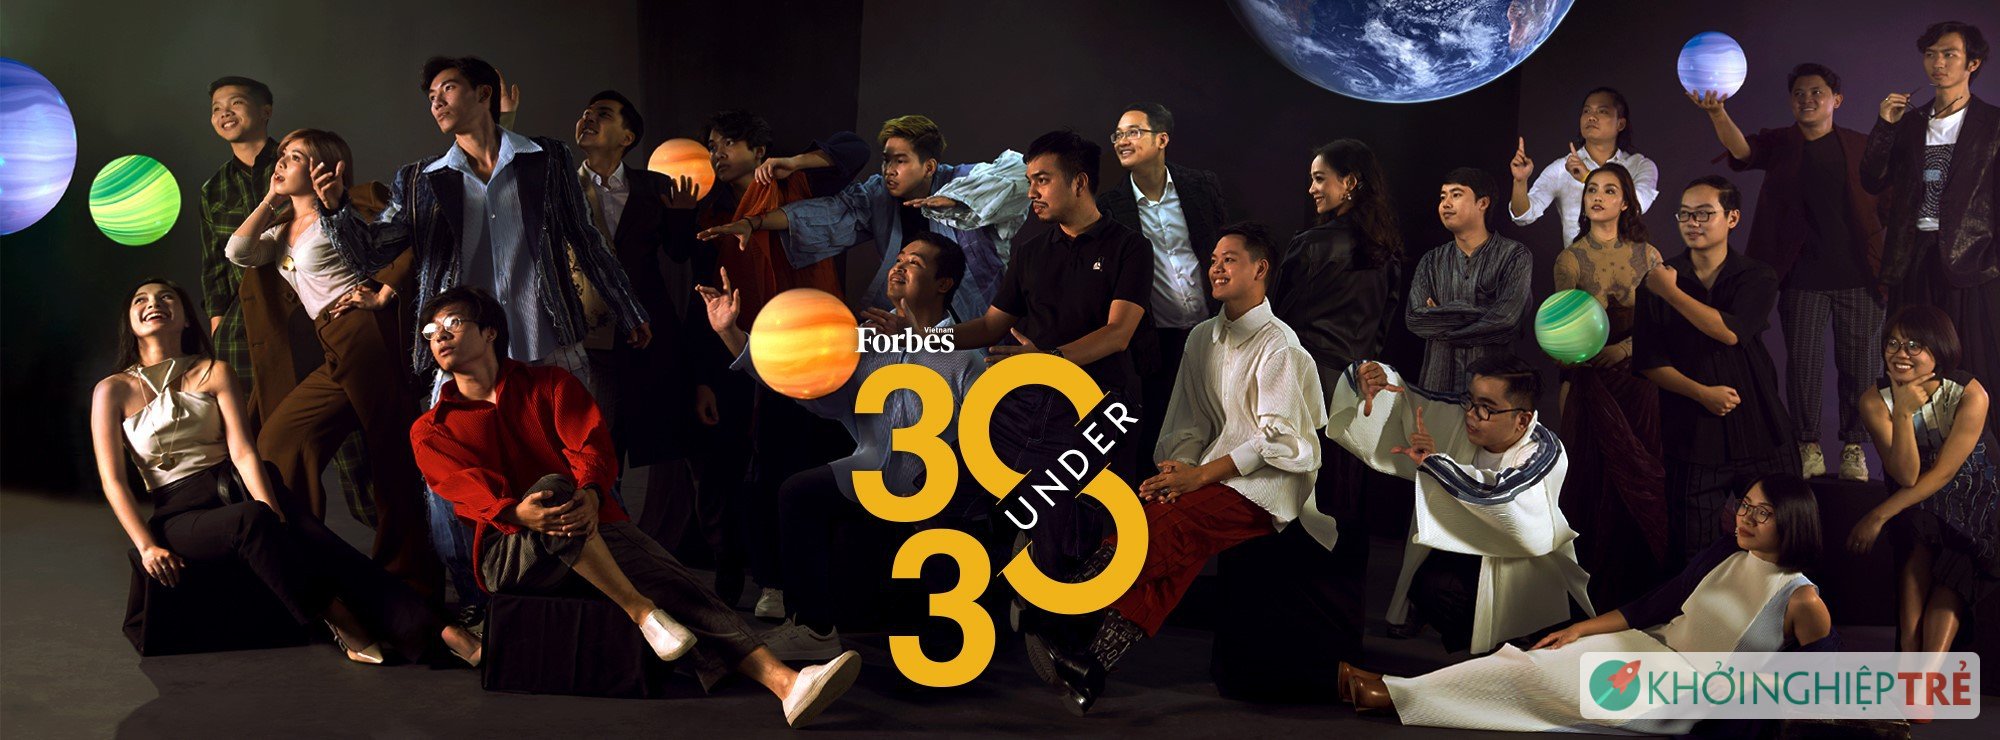 Tạp chí Forbes Vietnam công bố danh sách 30 Under 30 Việt Nam trong năm 2020 2